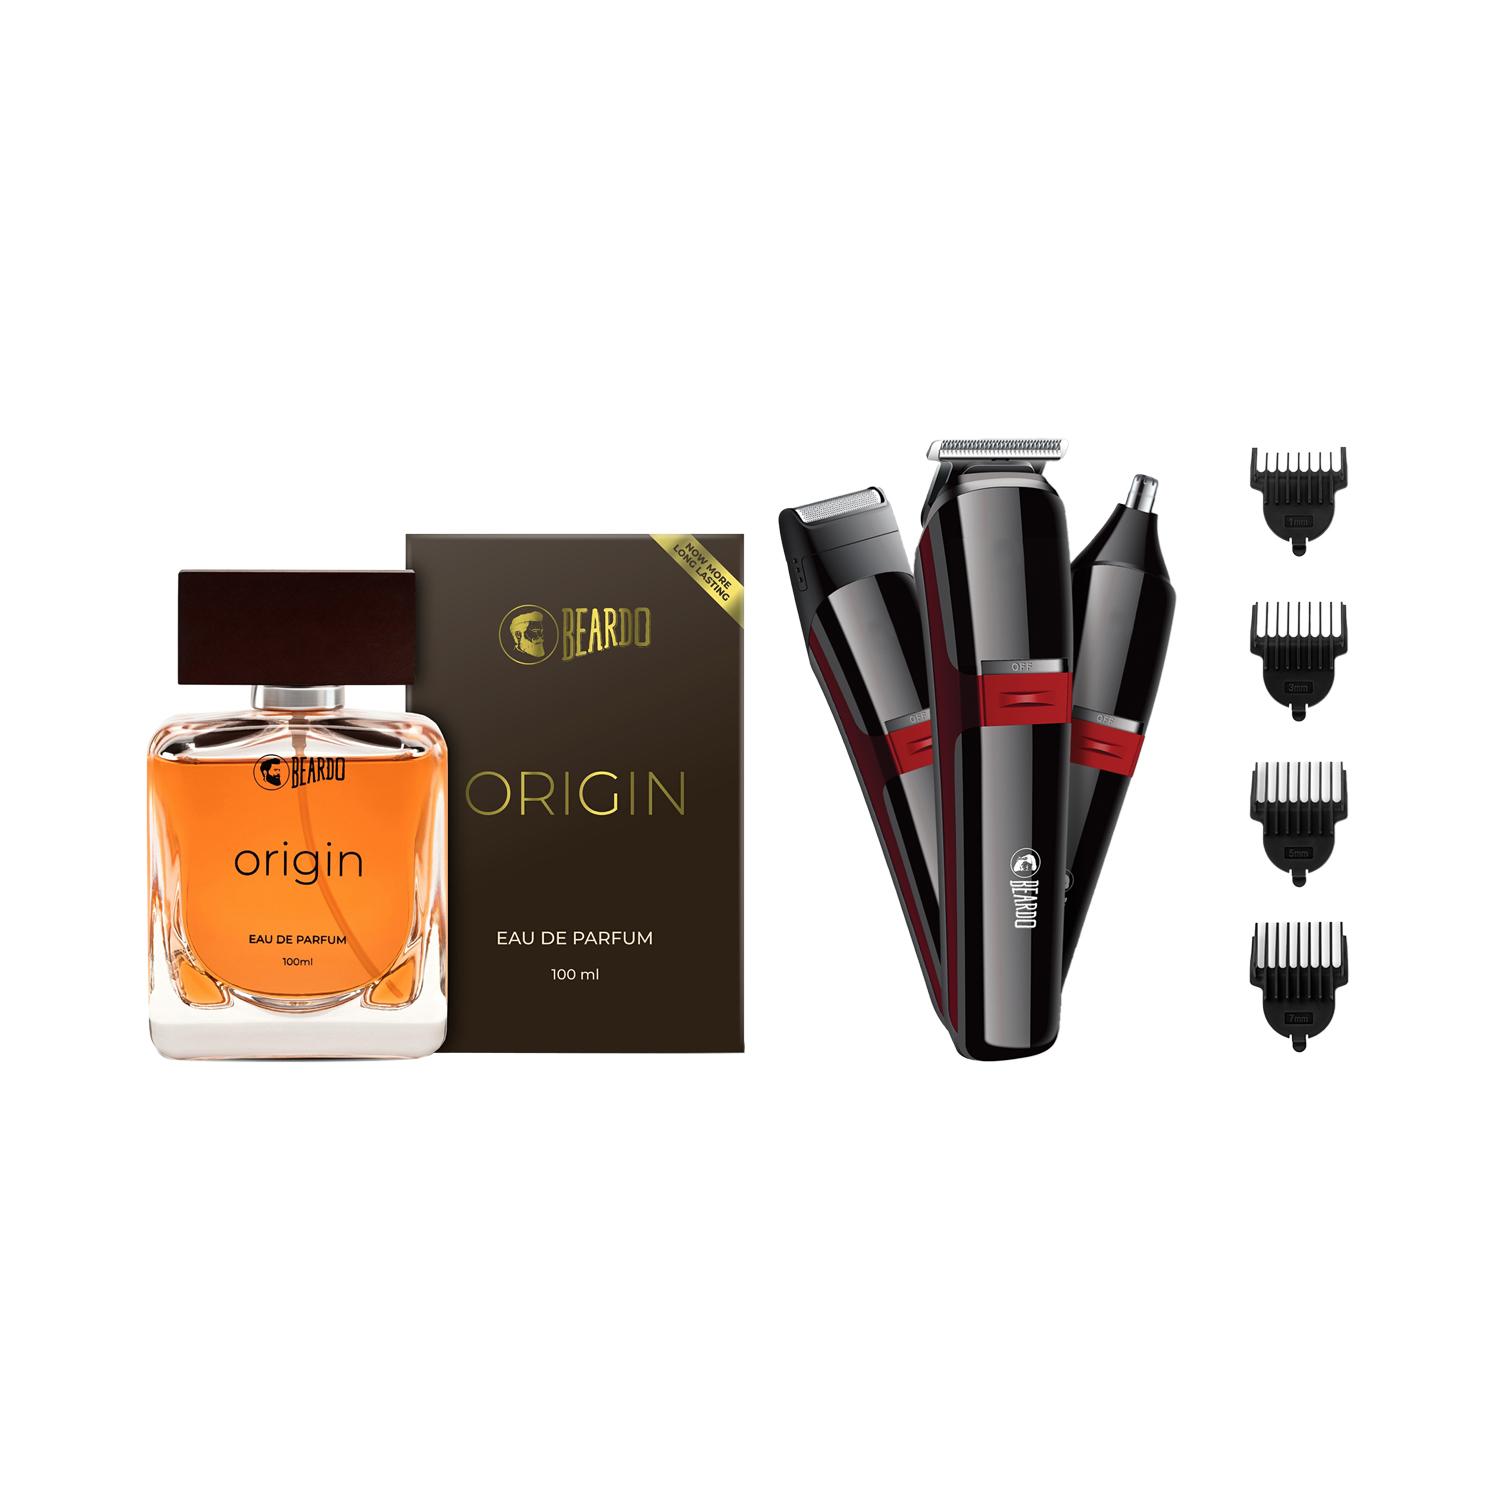 Beardo | Beardo Perfume Spray - Origin (100 ml) & Ape X 3-in-1 Trimmer for Men Combo